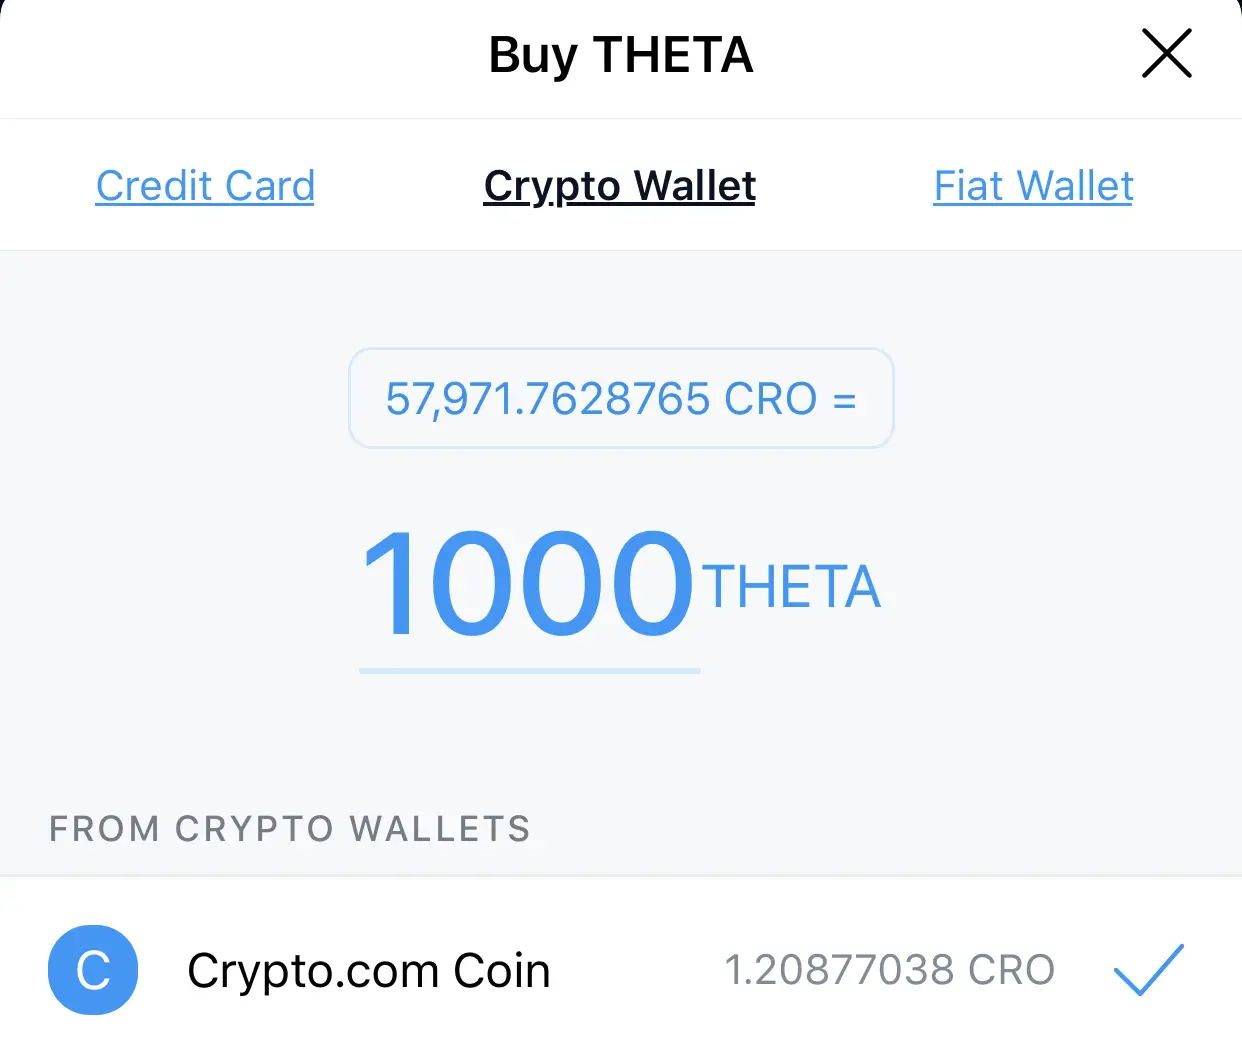 how do i buy theta crypto